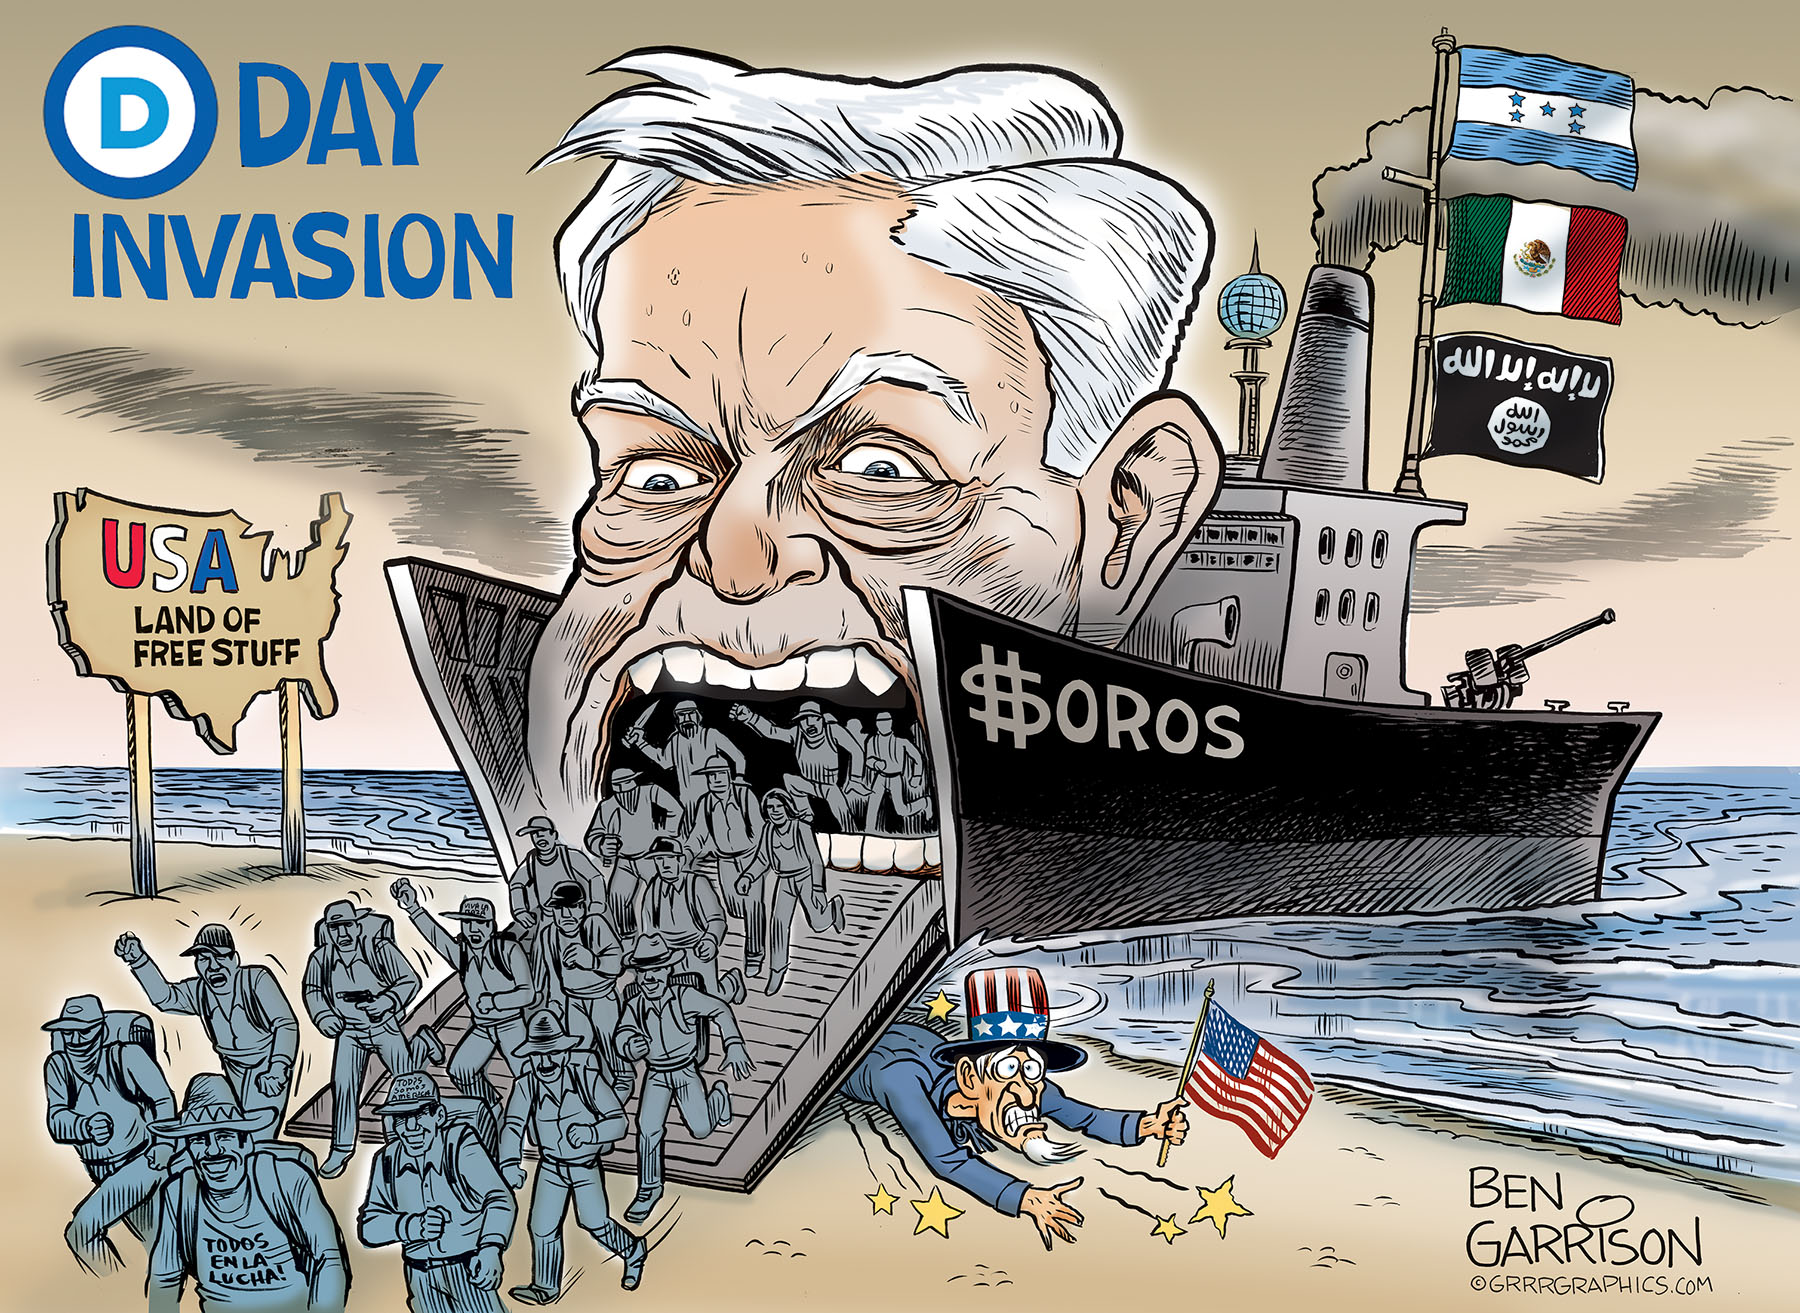 D_day_invasion_cartoon-1.jpg